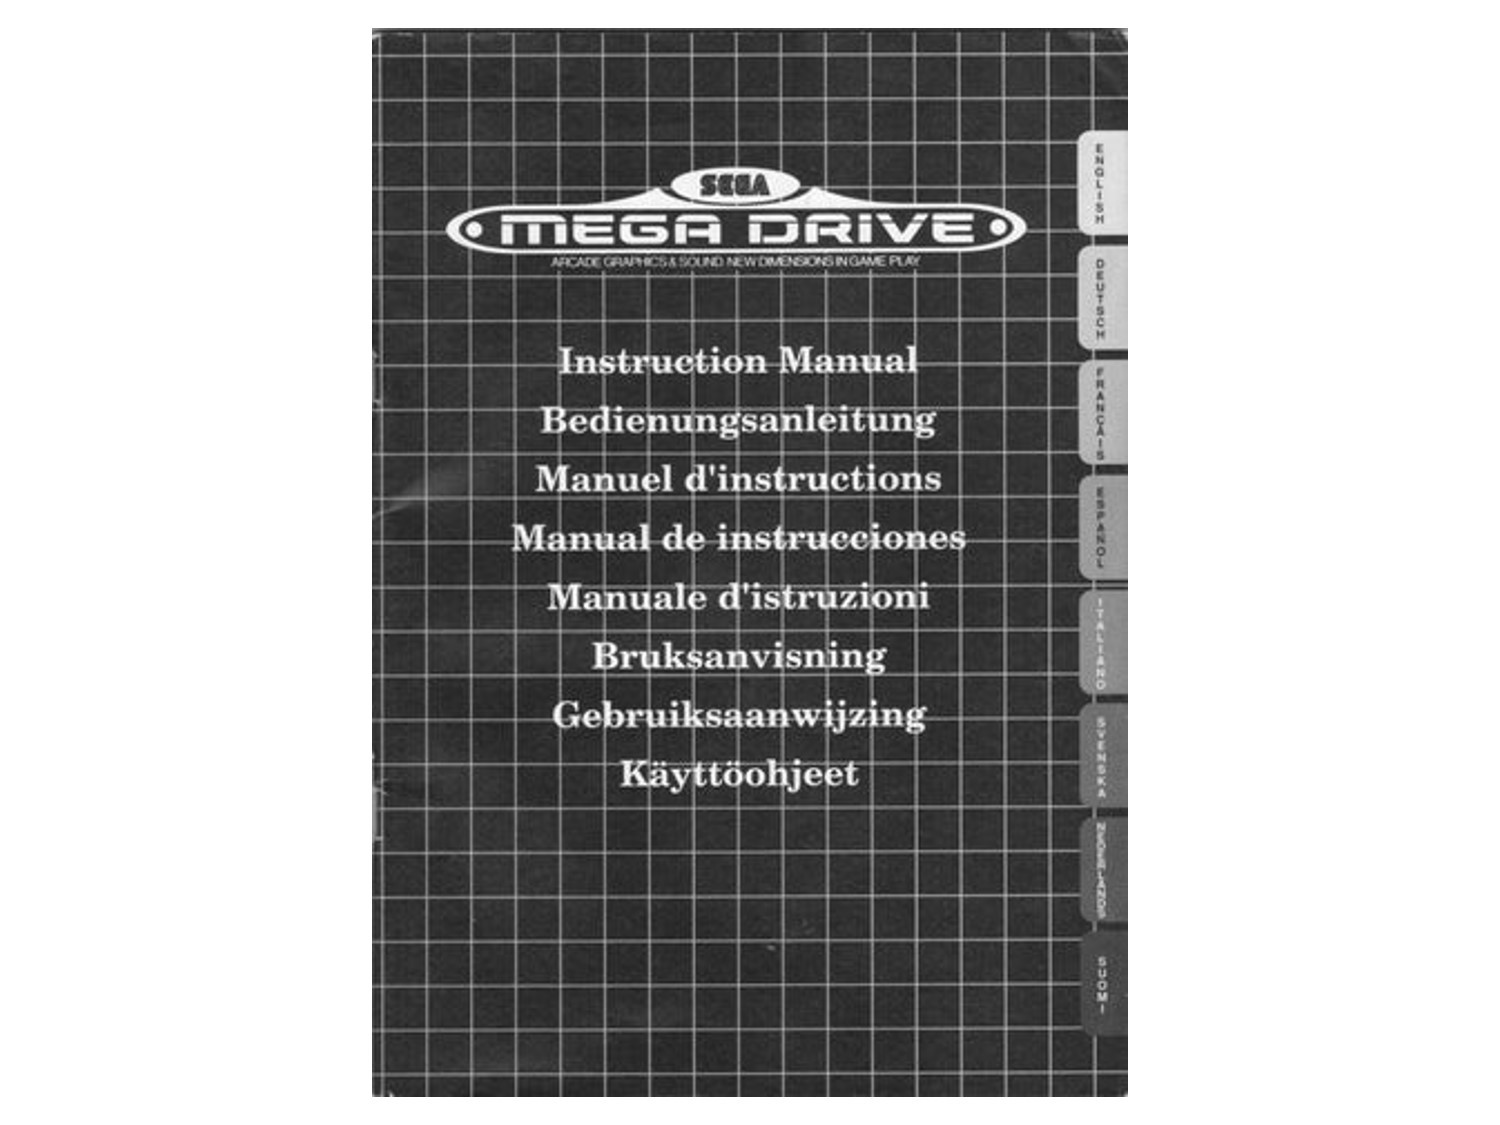 Sega Mega Drive I Instruction Manual - Sega Mega Drive Hardware